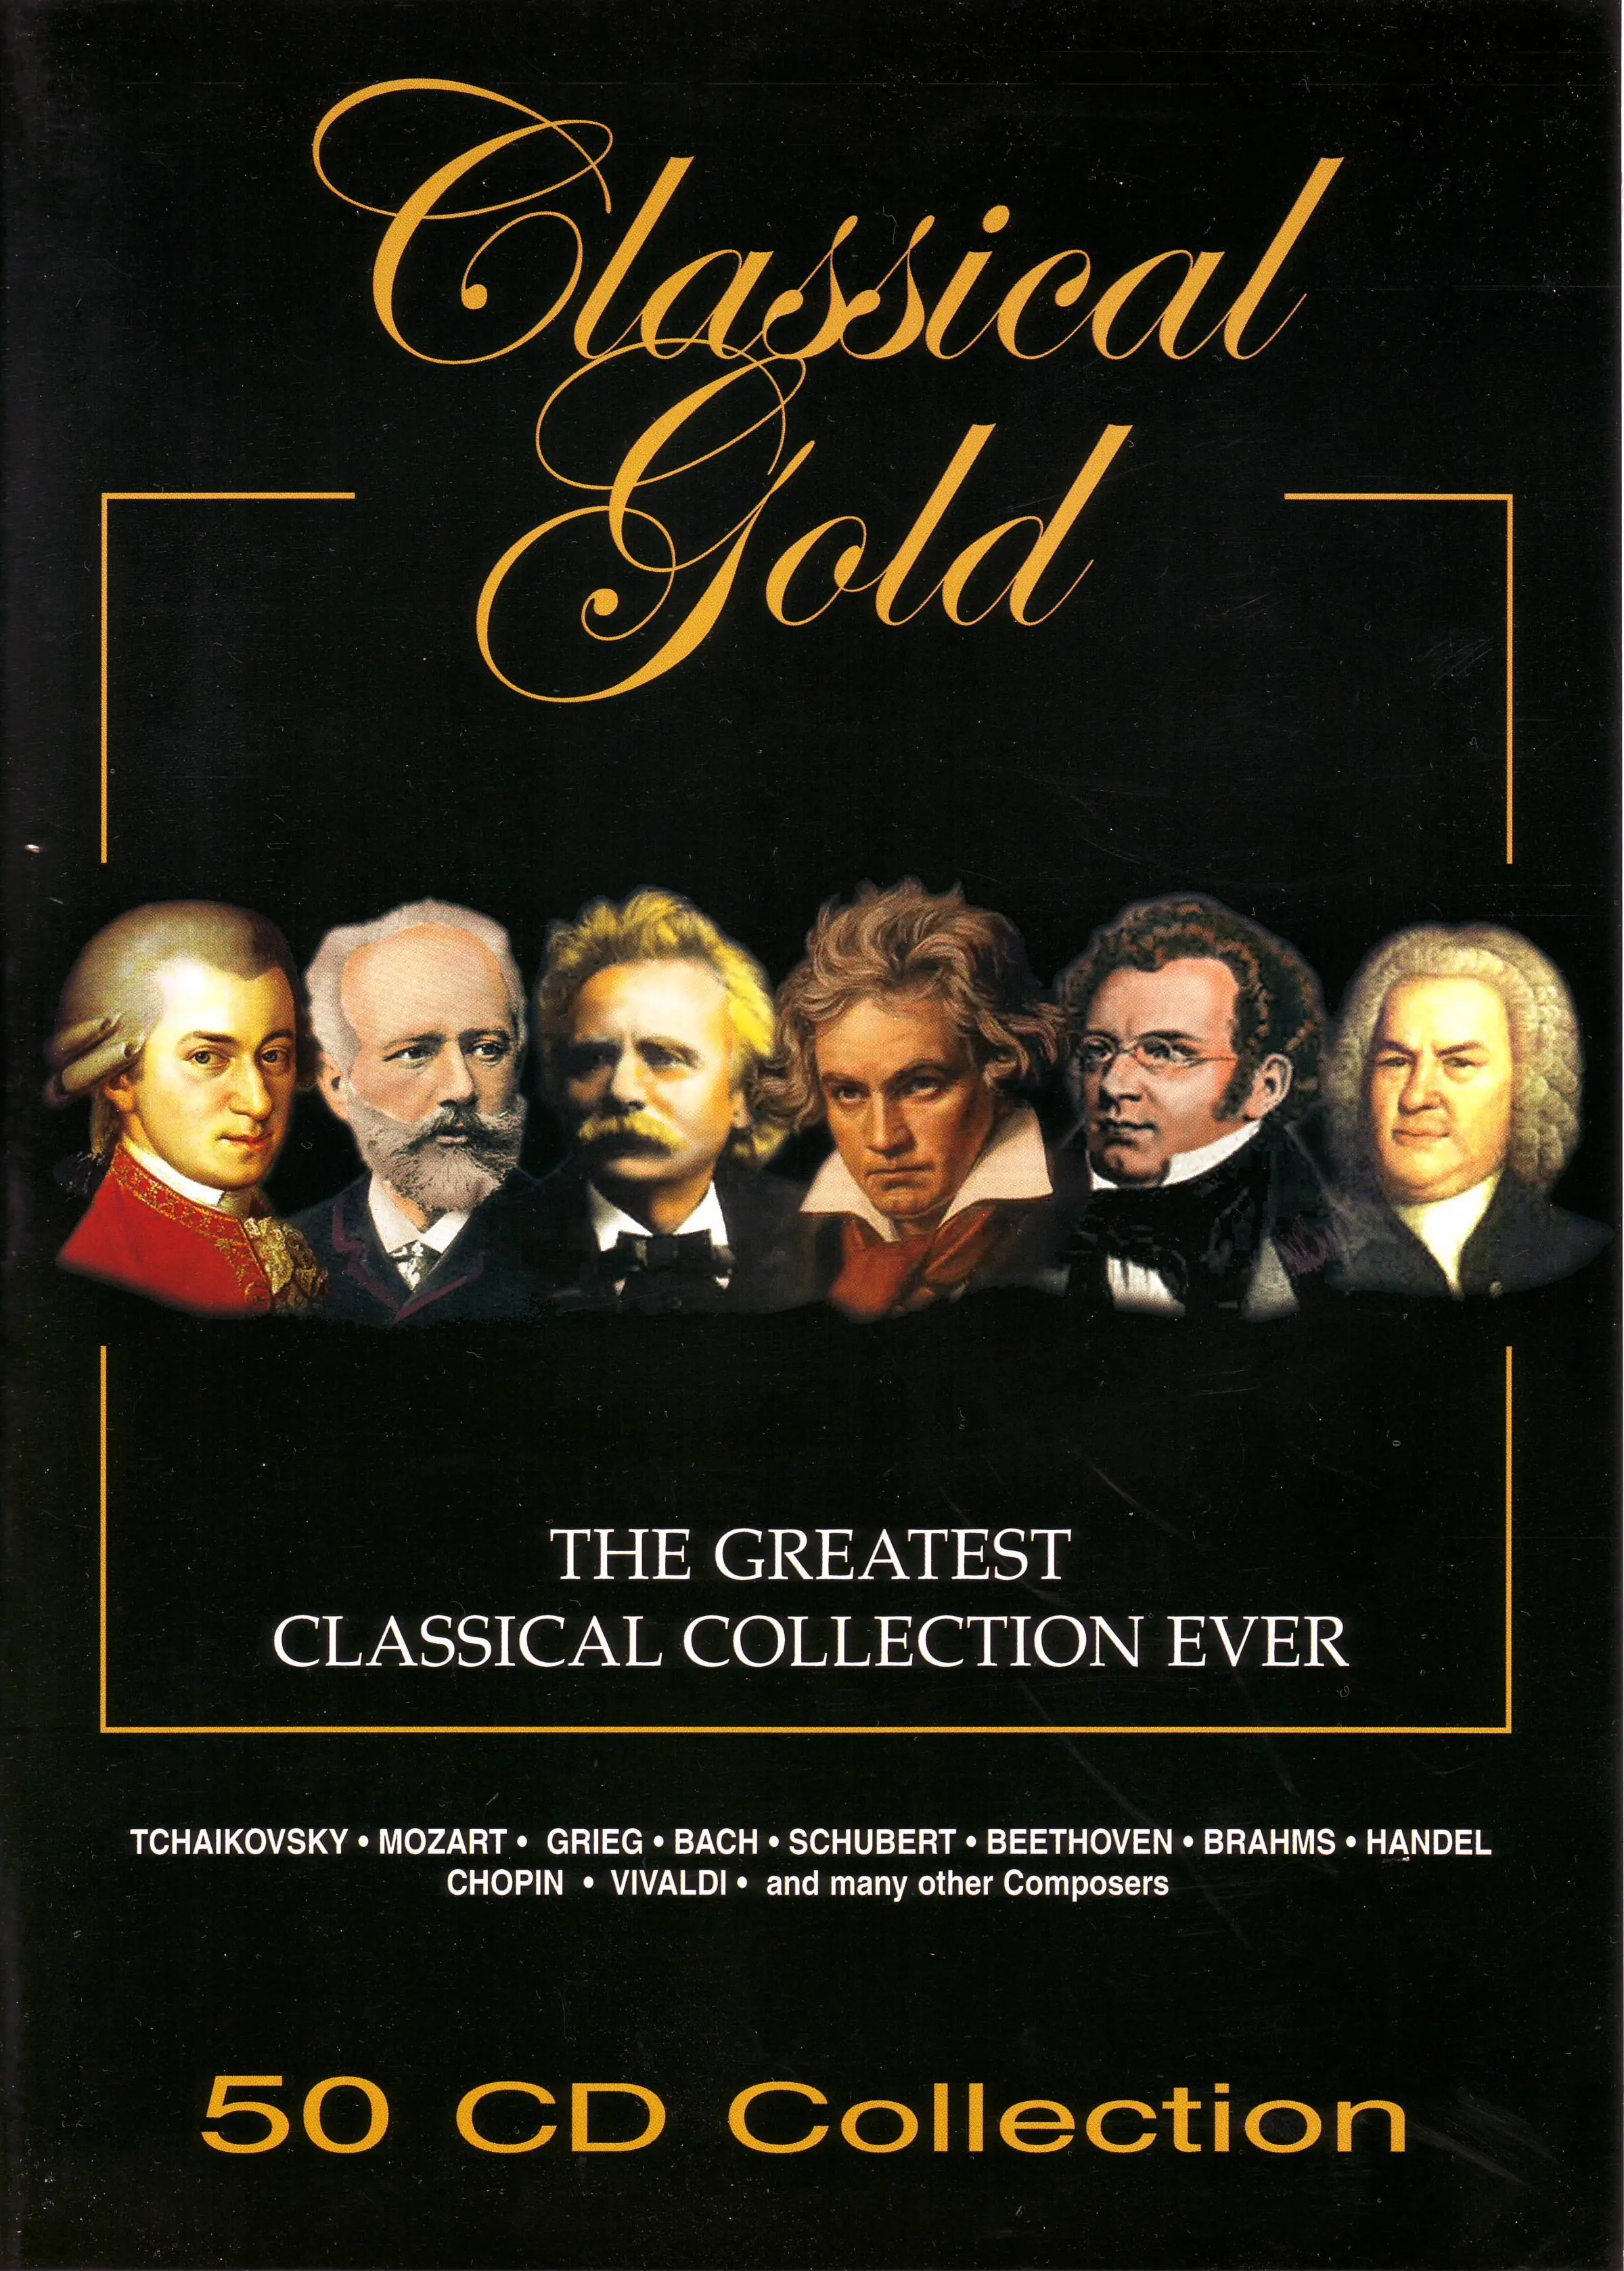 Произведения классики музыки. Classical Gold 50 CD Box Set. Берлиоз фантастическая симфония. Classical Gold-50cd collection Box Set(eu). Классика обложка.